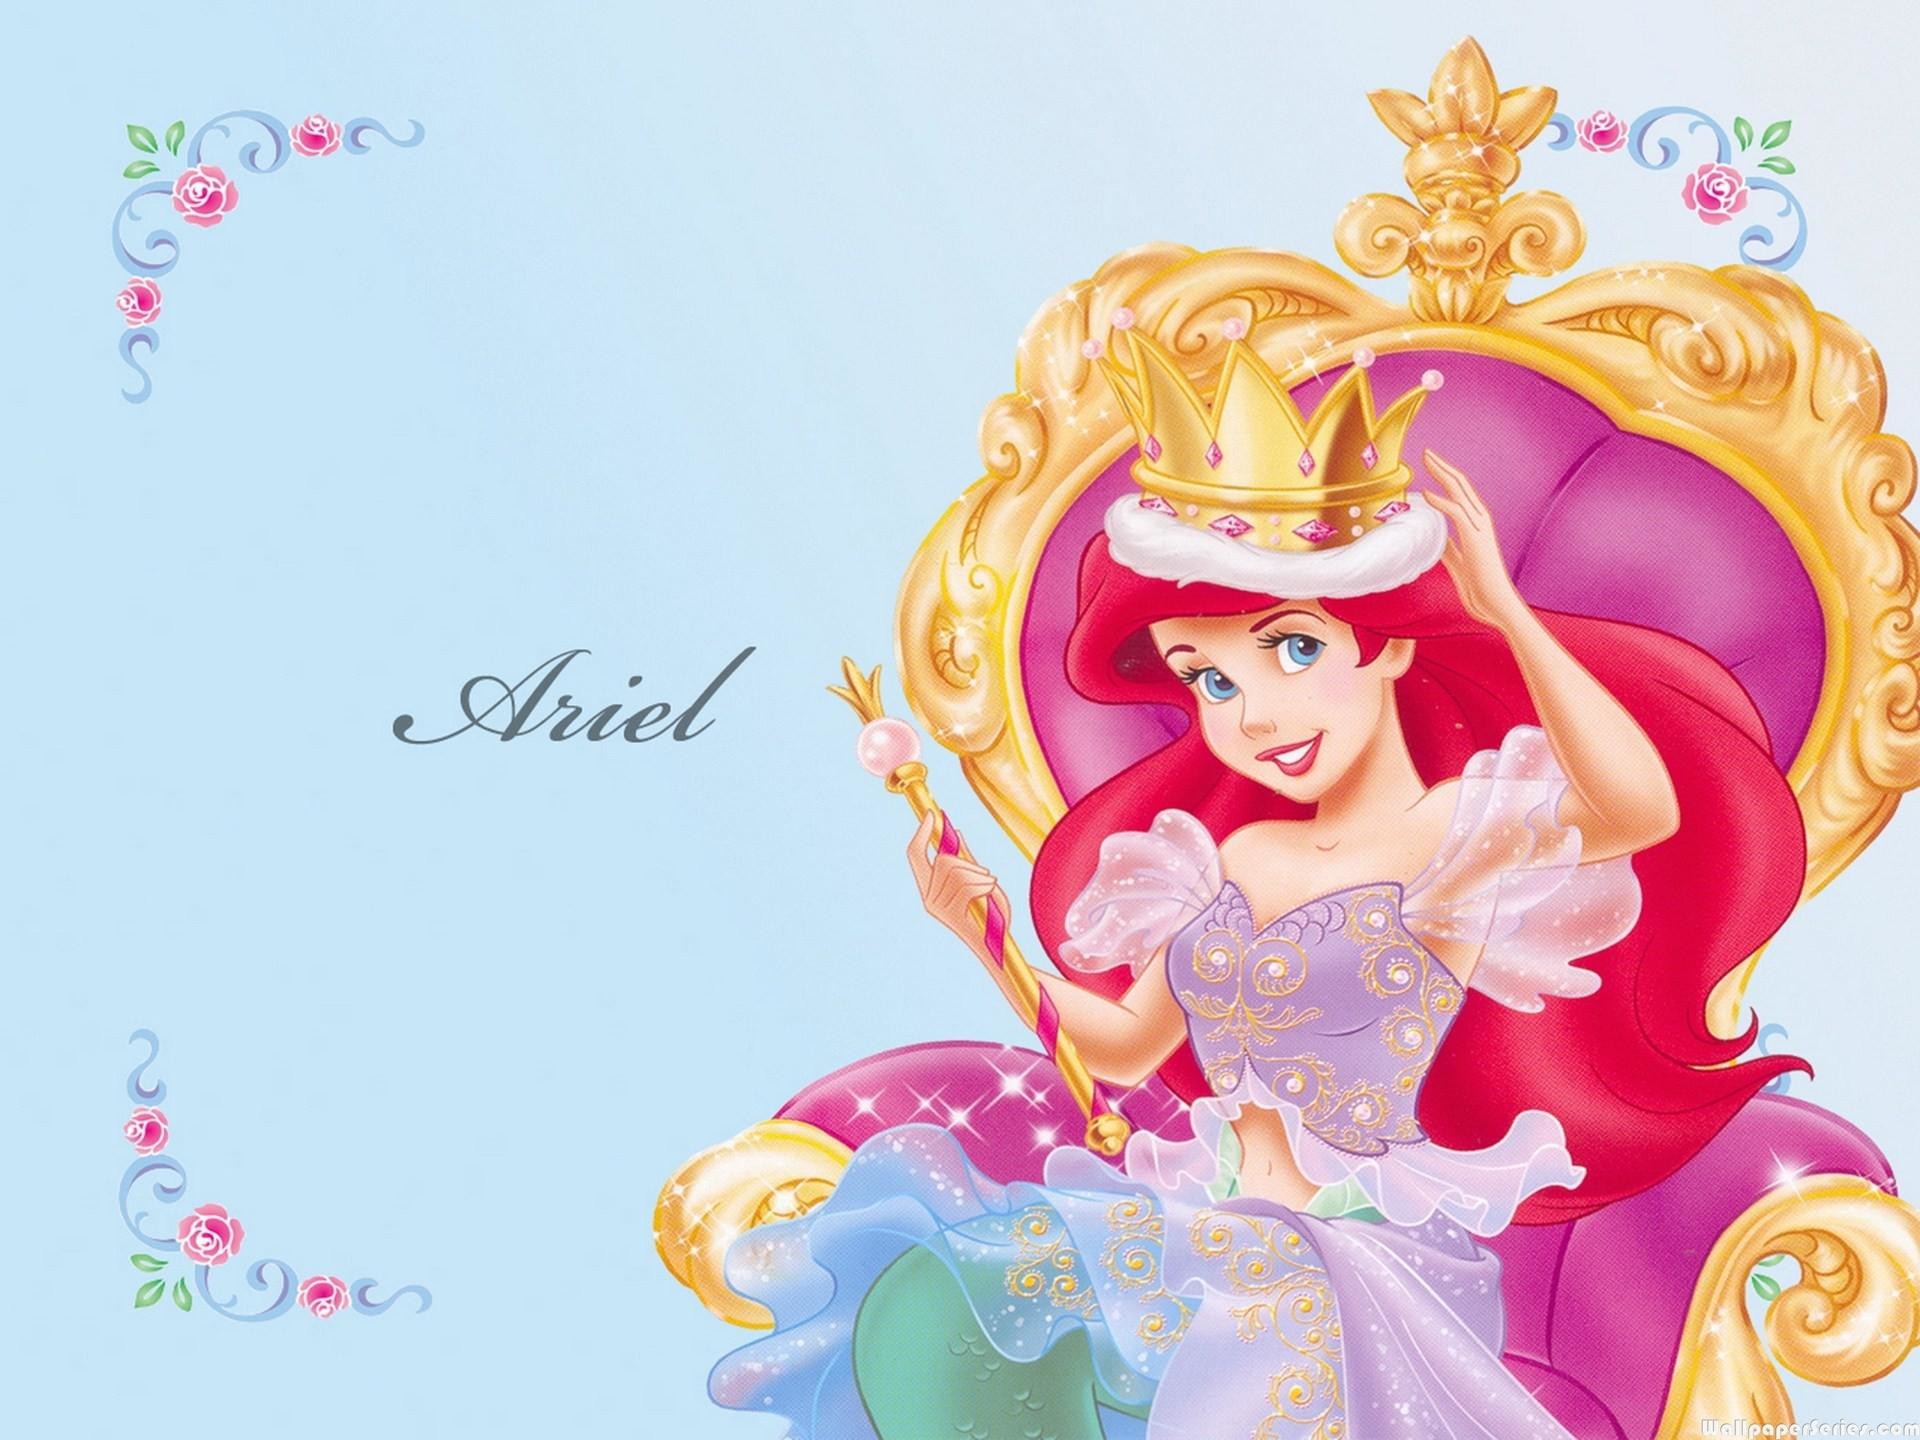 С днем рождения красивую принцессу. Принцесса. Картинки принцесс. Открытка принцесса. День рождения принцессы.